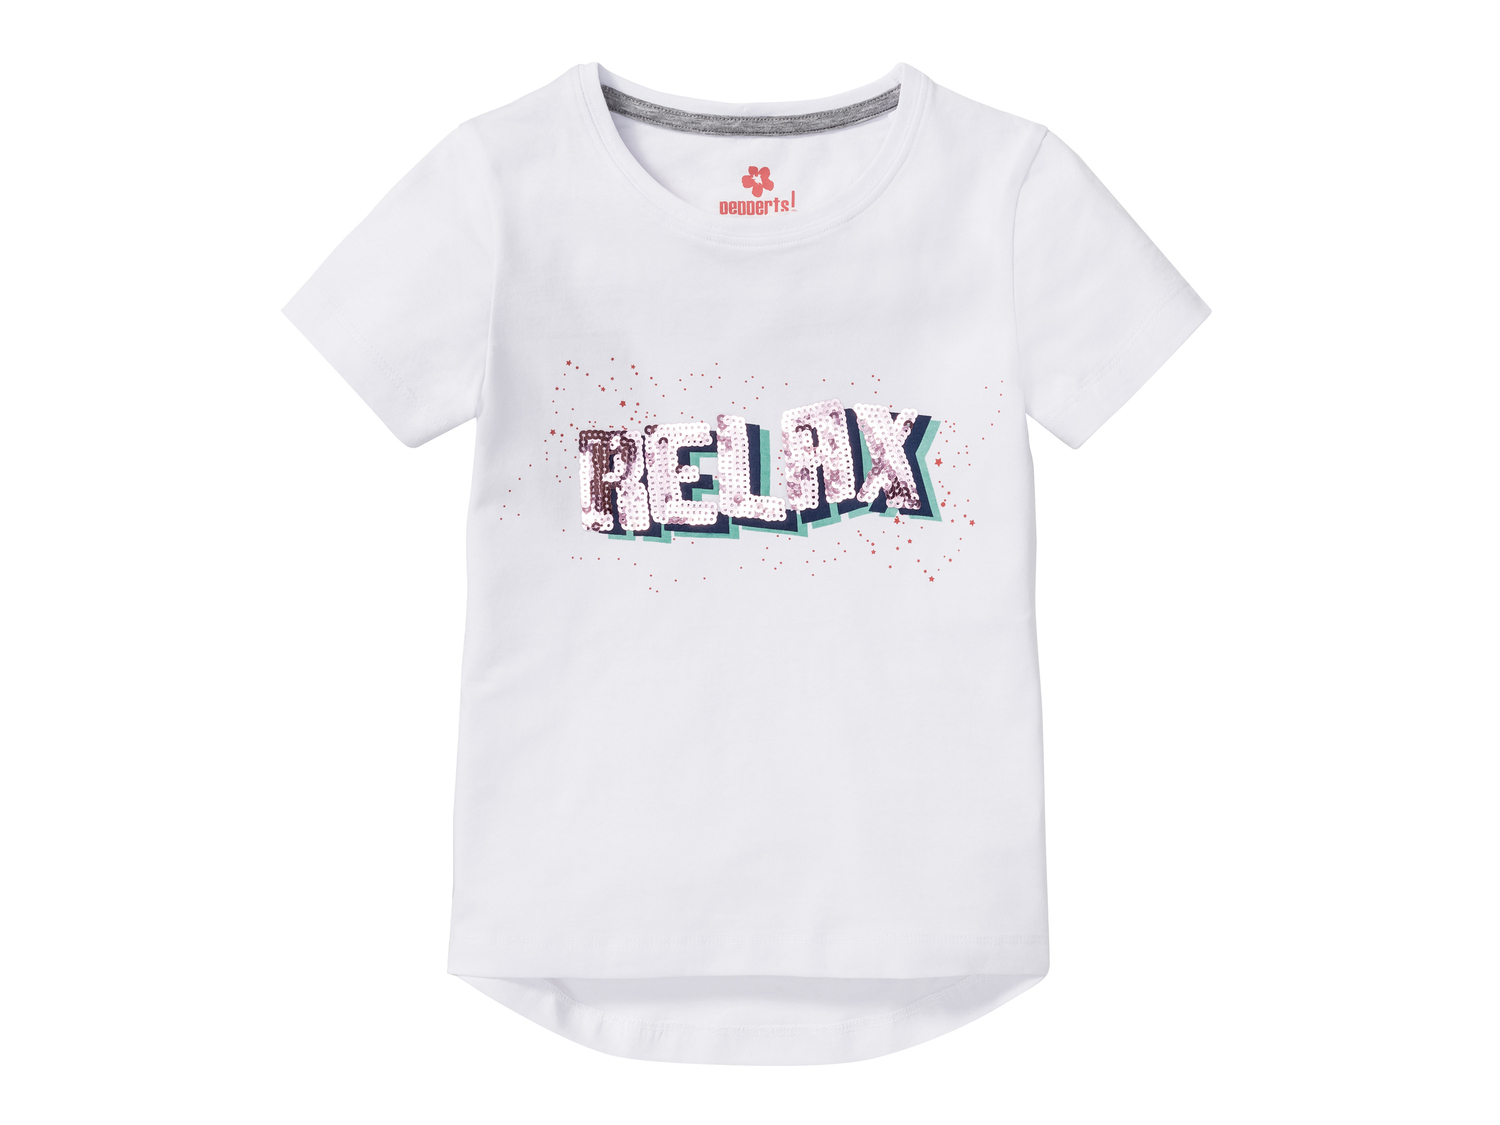 T-shirt da bambina Pepperts, prezzo 4.99 &#8364; 
Misure: 6-14 anni
Taglie disponibili

Caratteristiche

- ...